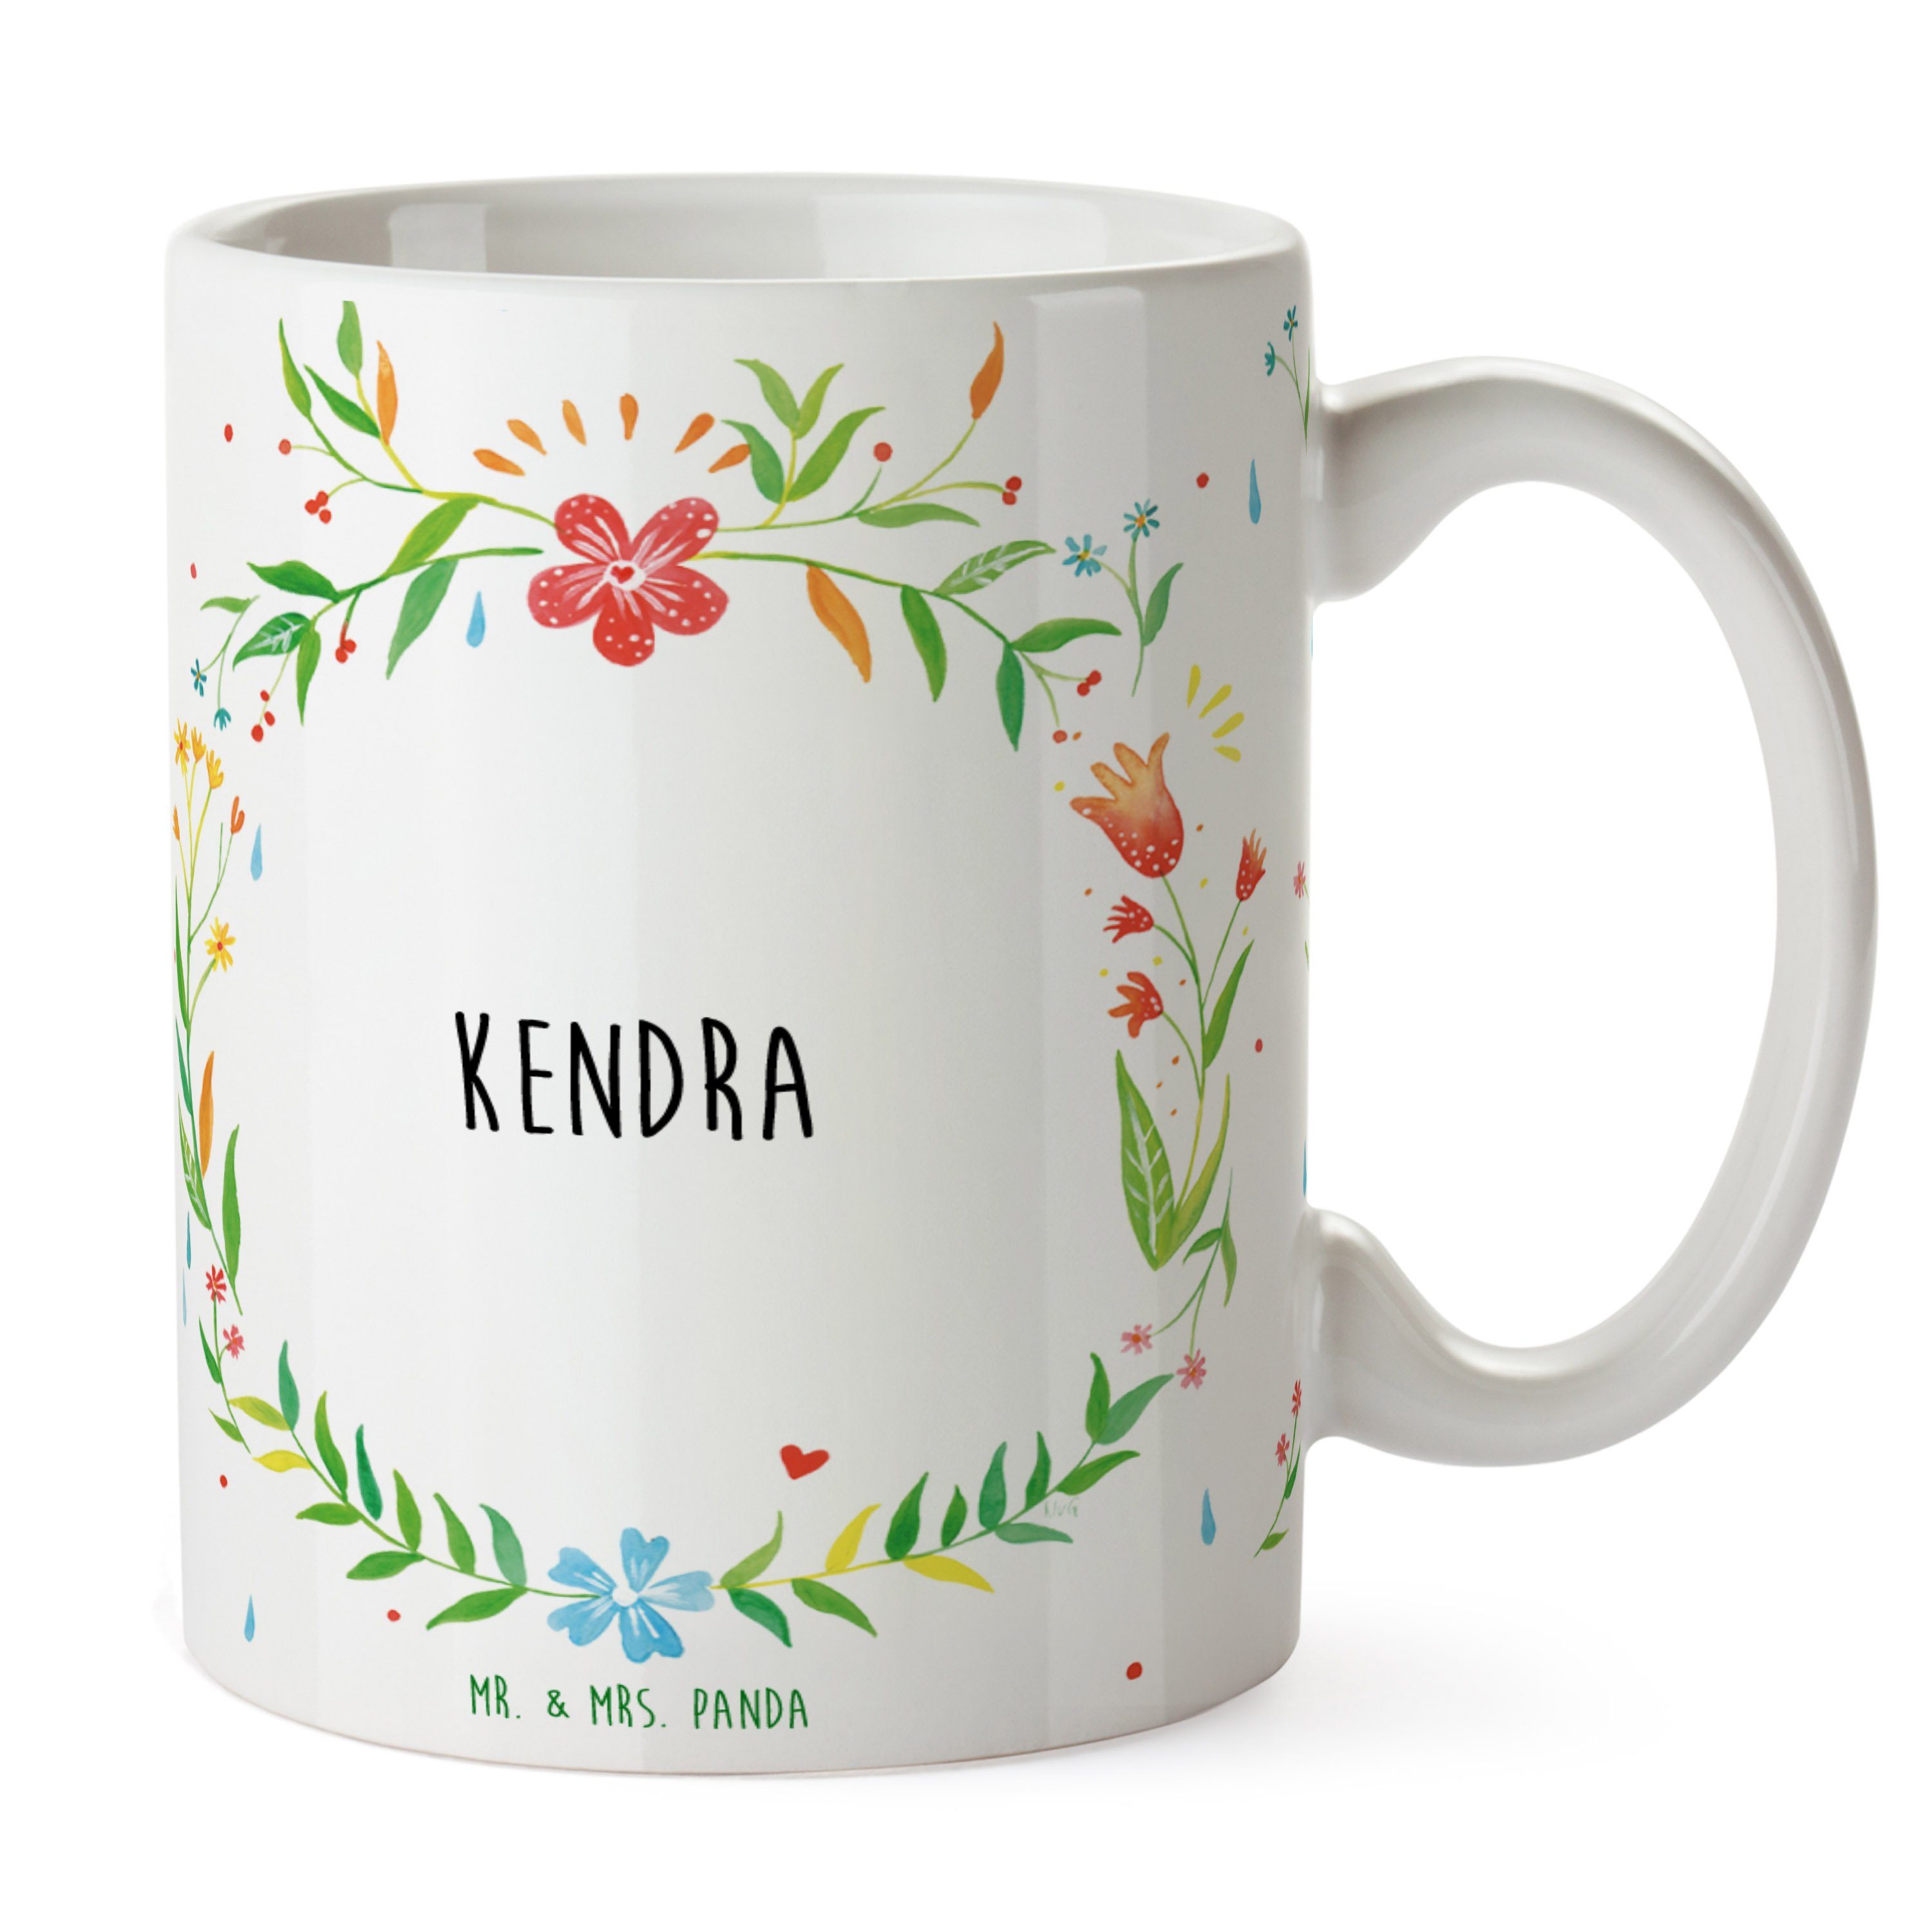 Mr. & Mrs. Panda Tasse Geschenk, Tasse Kendra Sprüche, Keramik Teetasse, - Geschenk Tasse Ta, Motive